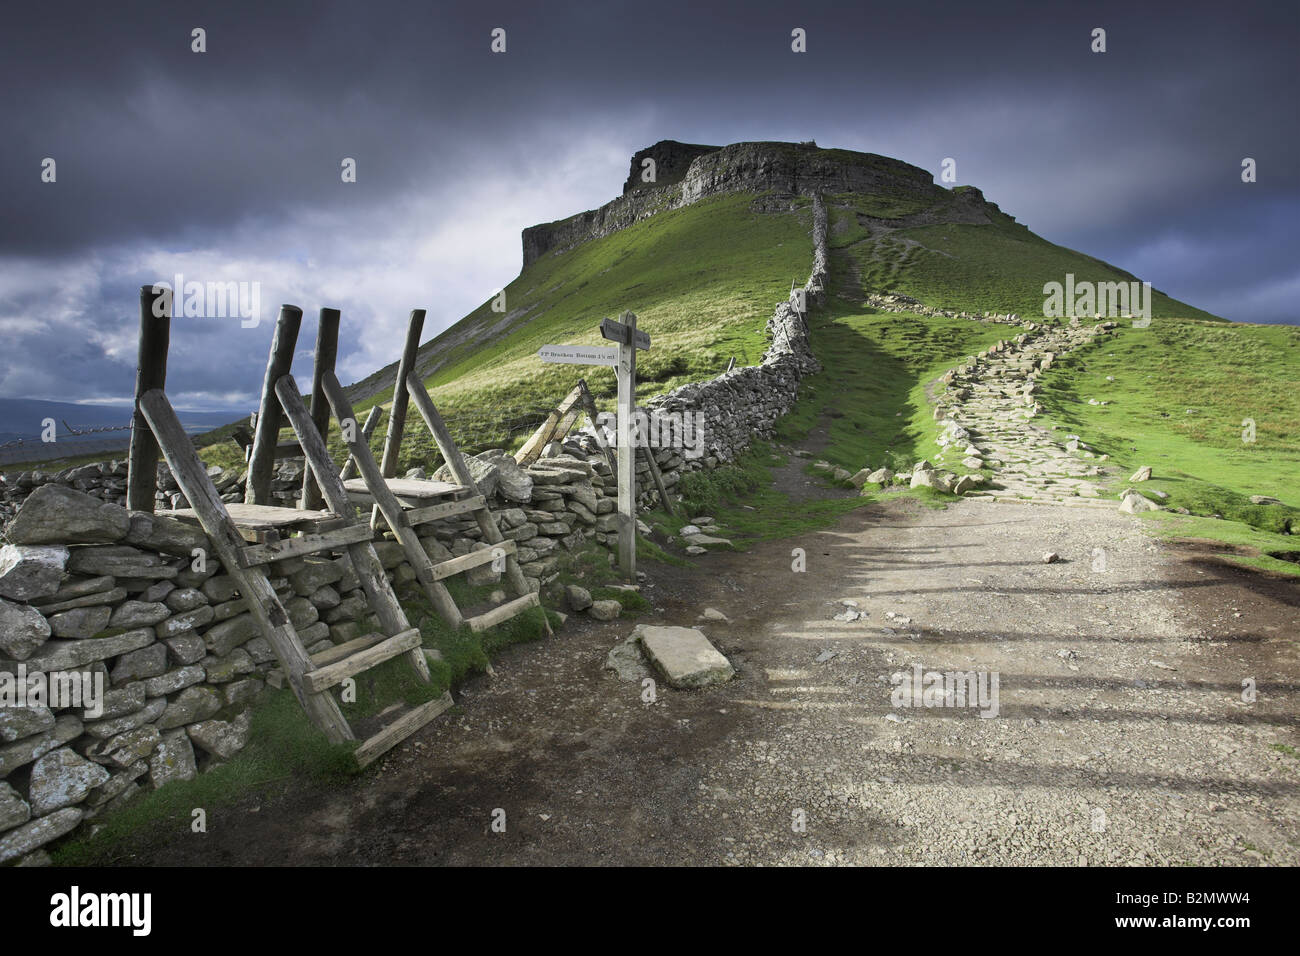 Der Pennine Way Wanderweg und die markanten Gipfel von Pen-Y-Gent, Ribblesdale, Yorkshire Dales, UK Stockfoto